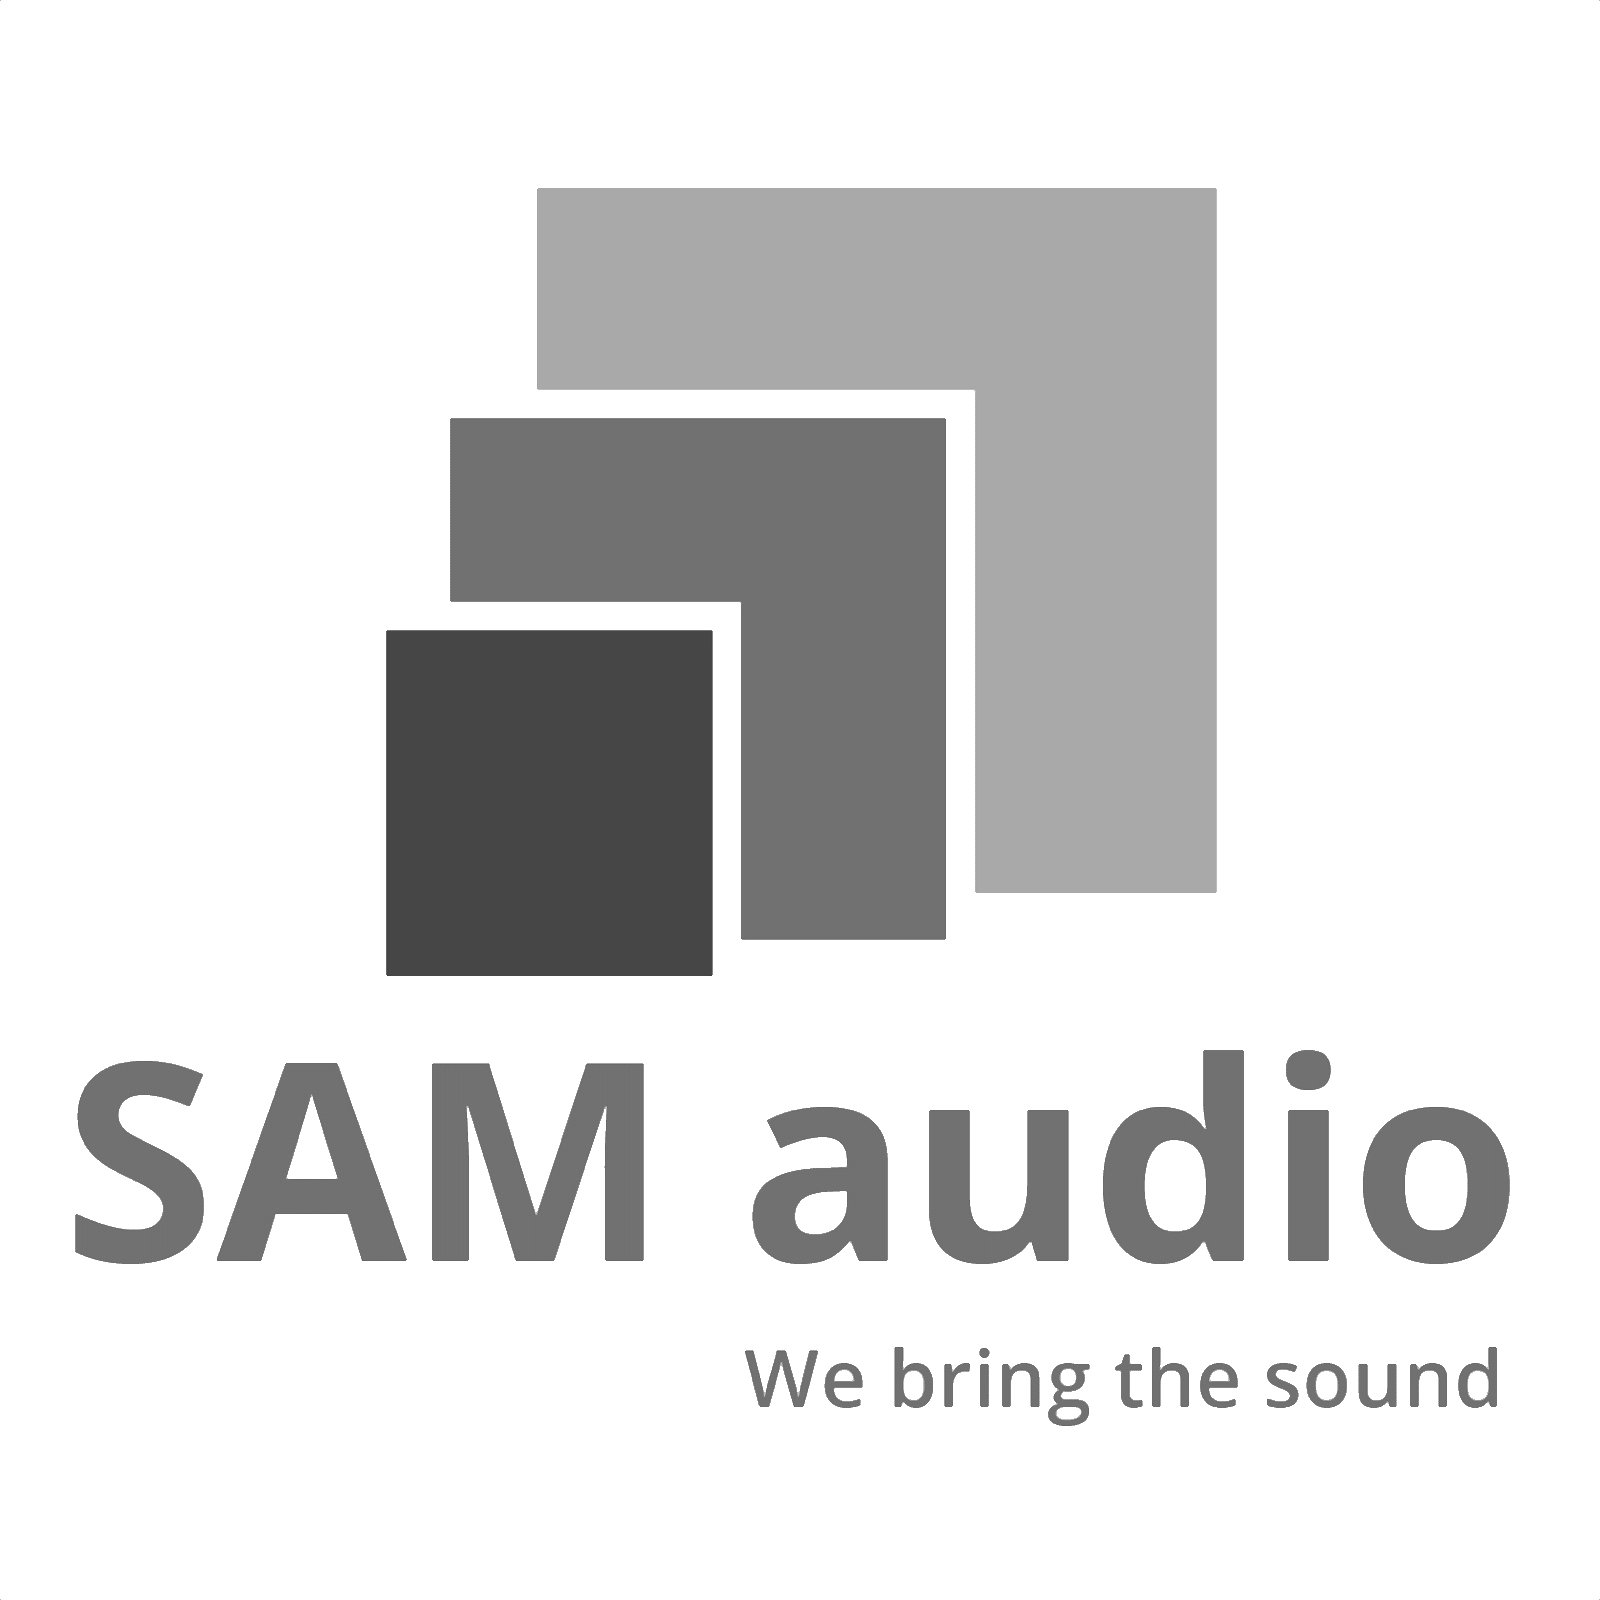 Sam Audio